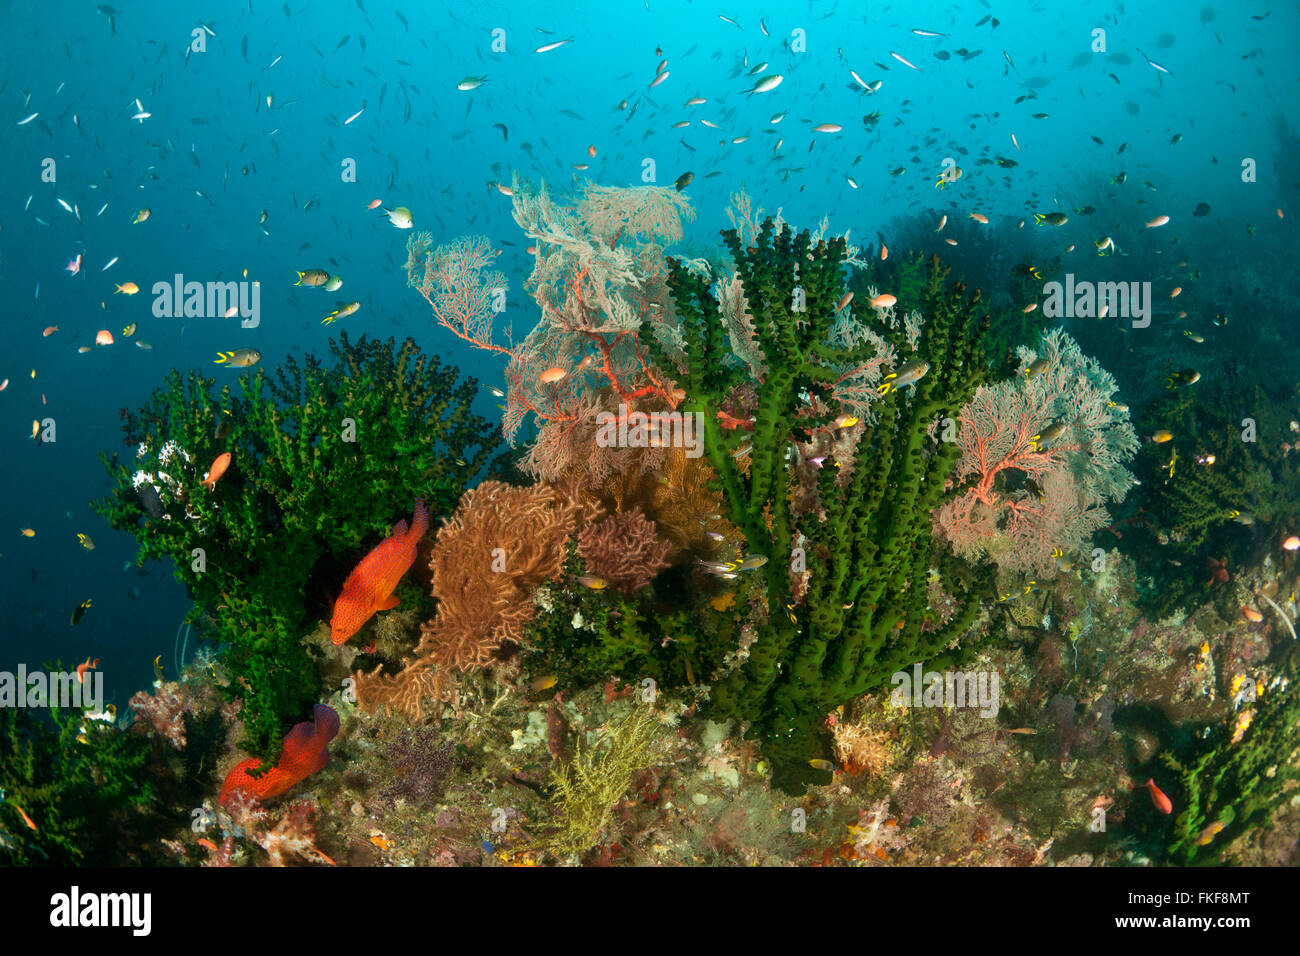 Gorgonian fan and black sun coral (Tubastrea micrantha) green tubastrea in coral reefs. Stock Photo